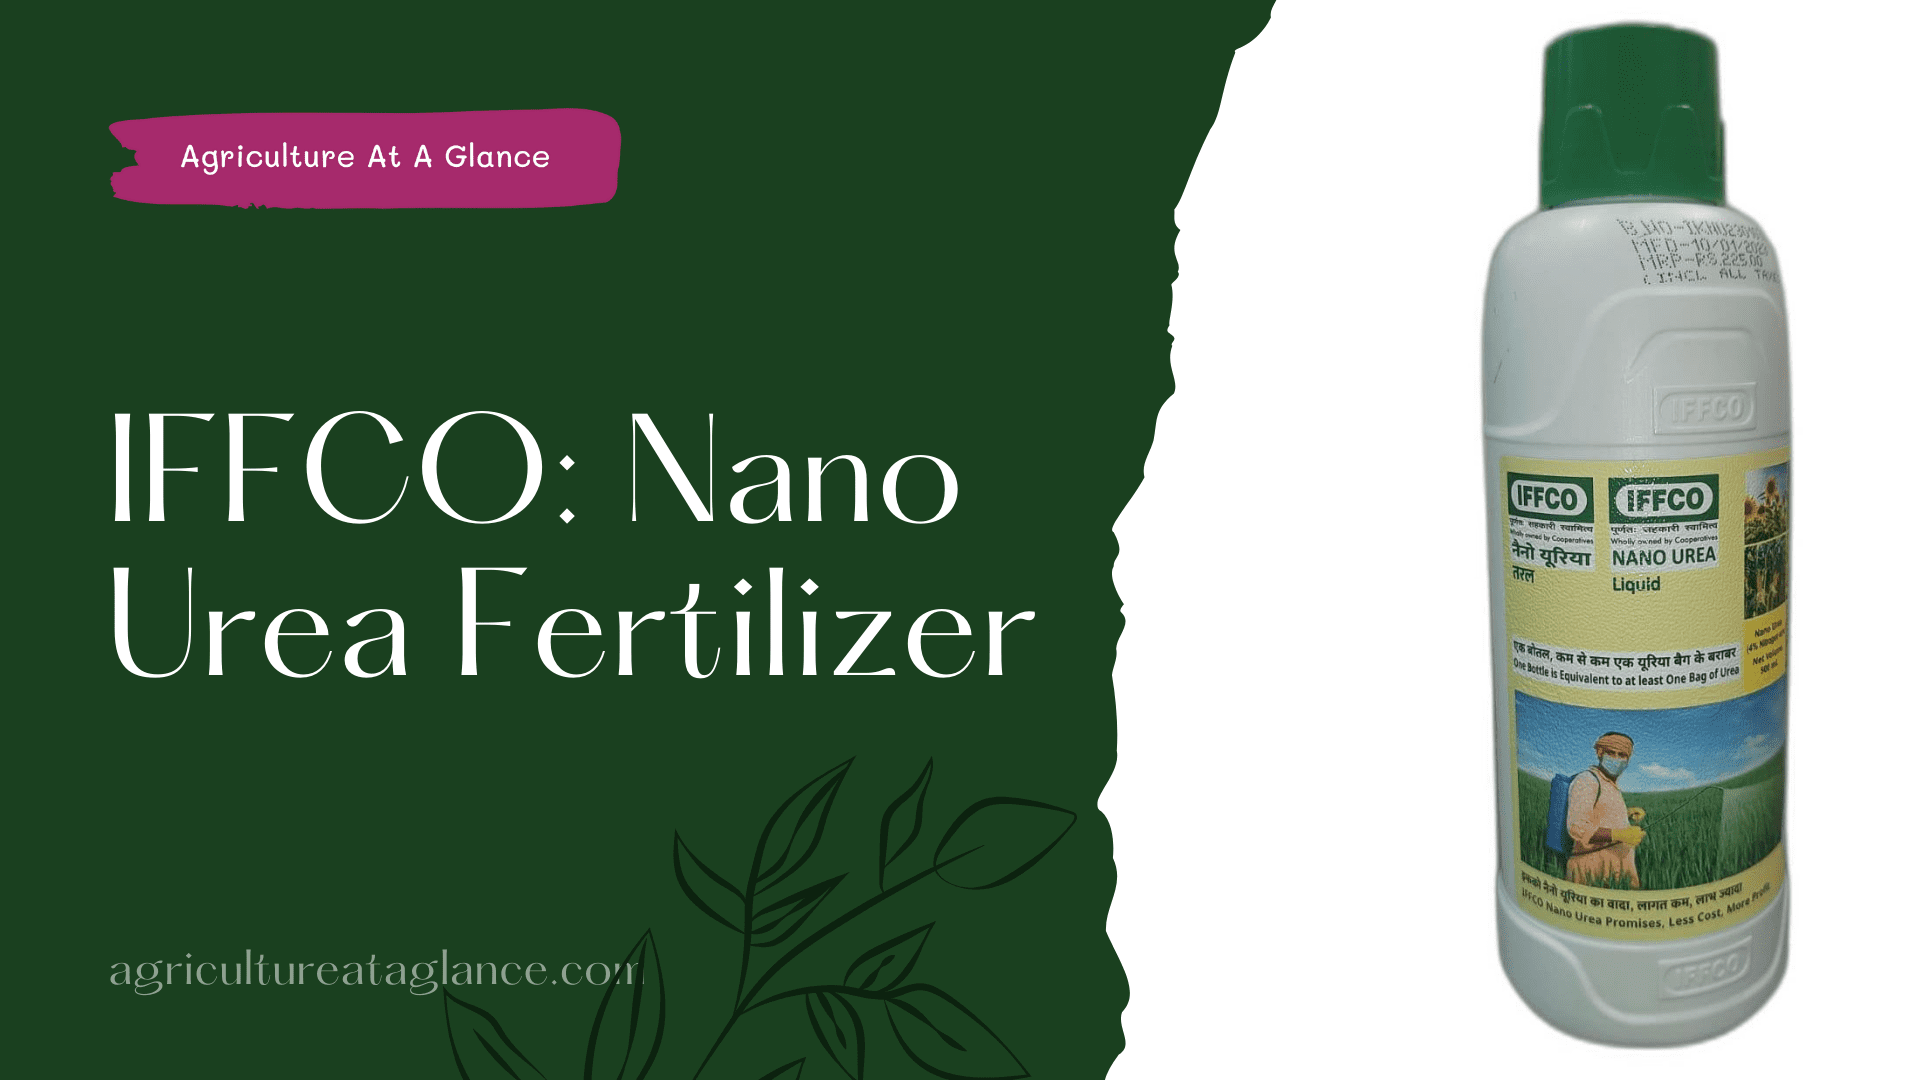 IFFCO: Nano Urea Fertilizer